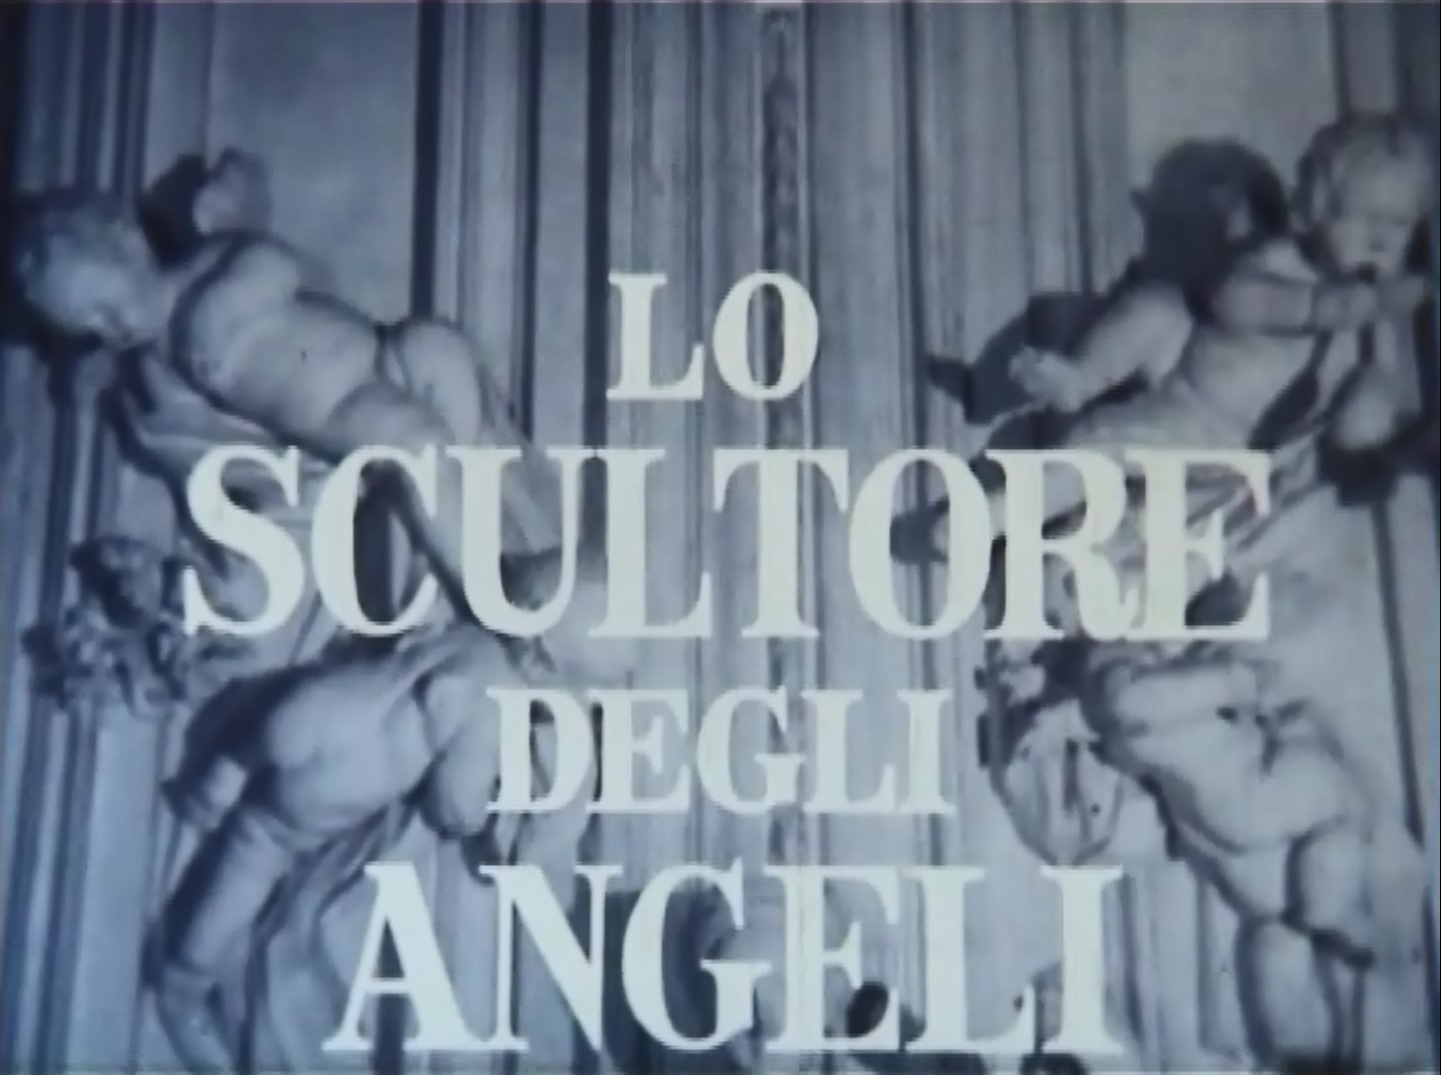 Fotogramma de Lo scultore degli angeli di Aldo Franchi, 1957.
